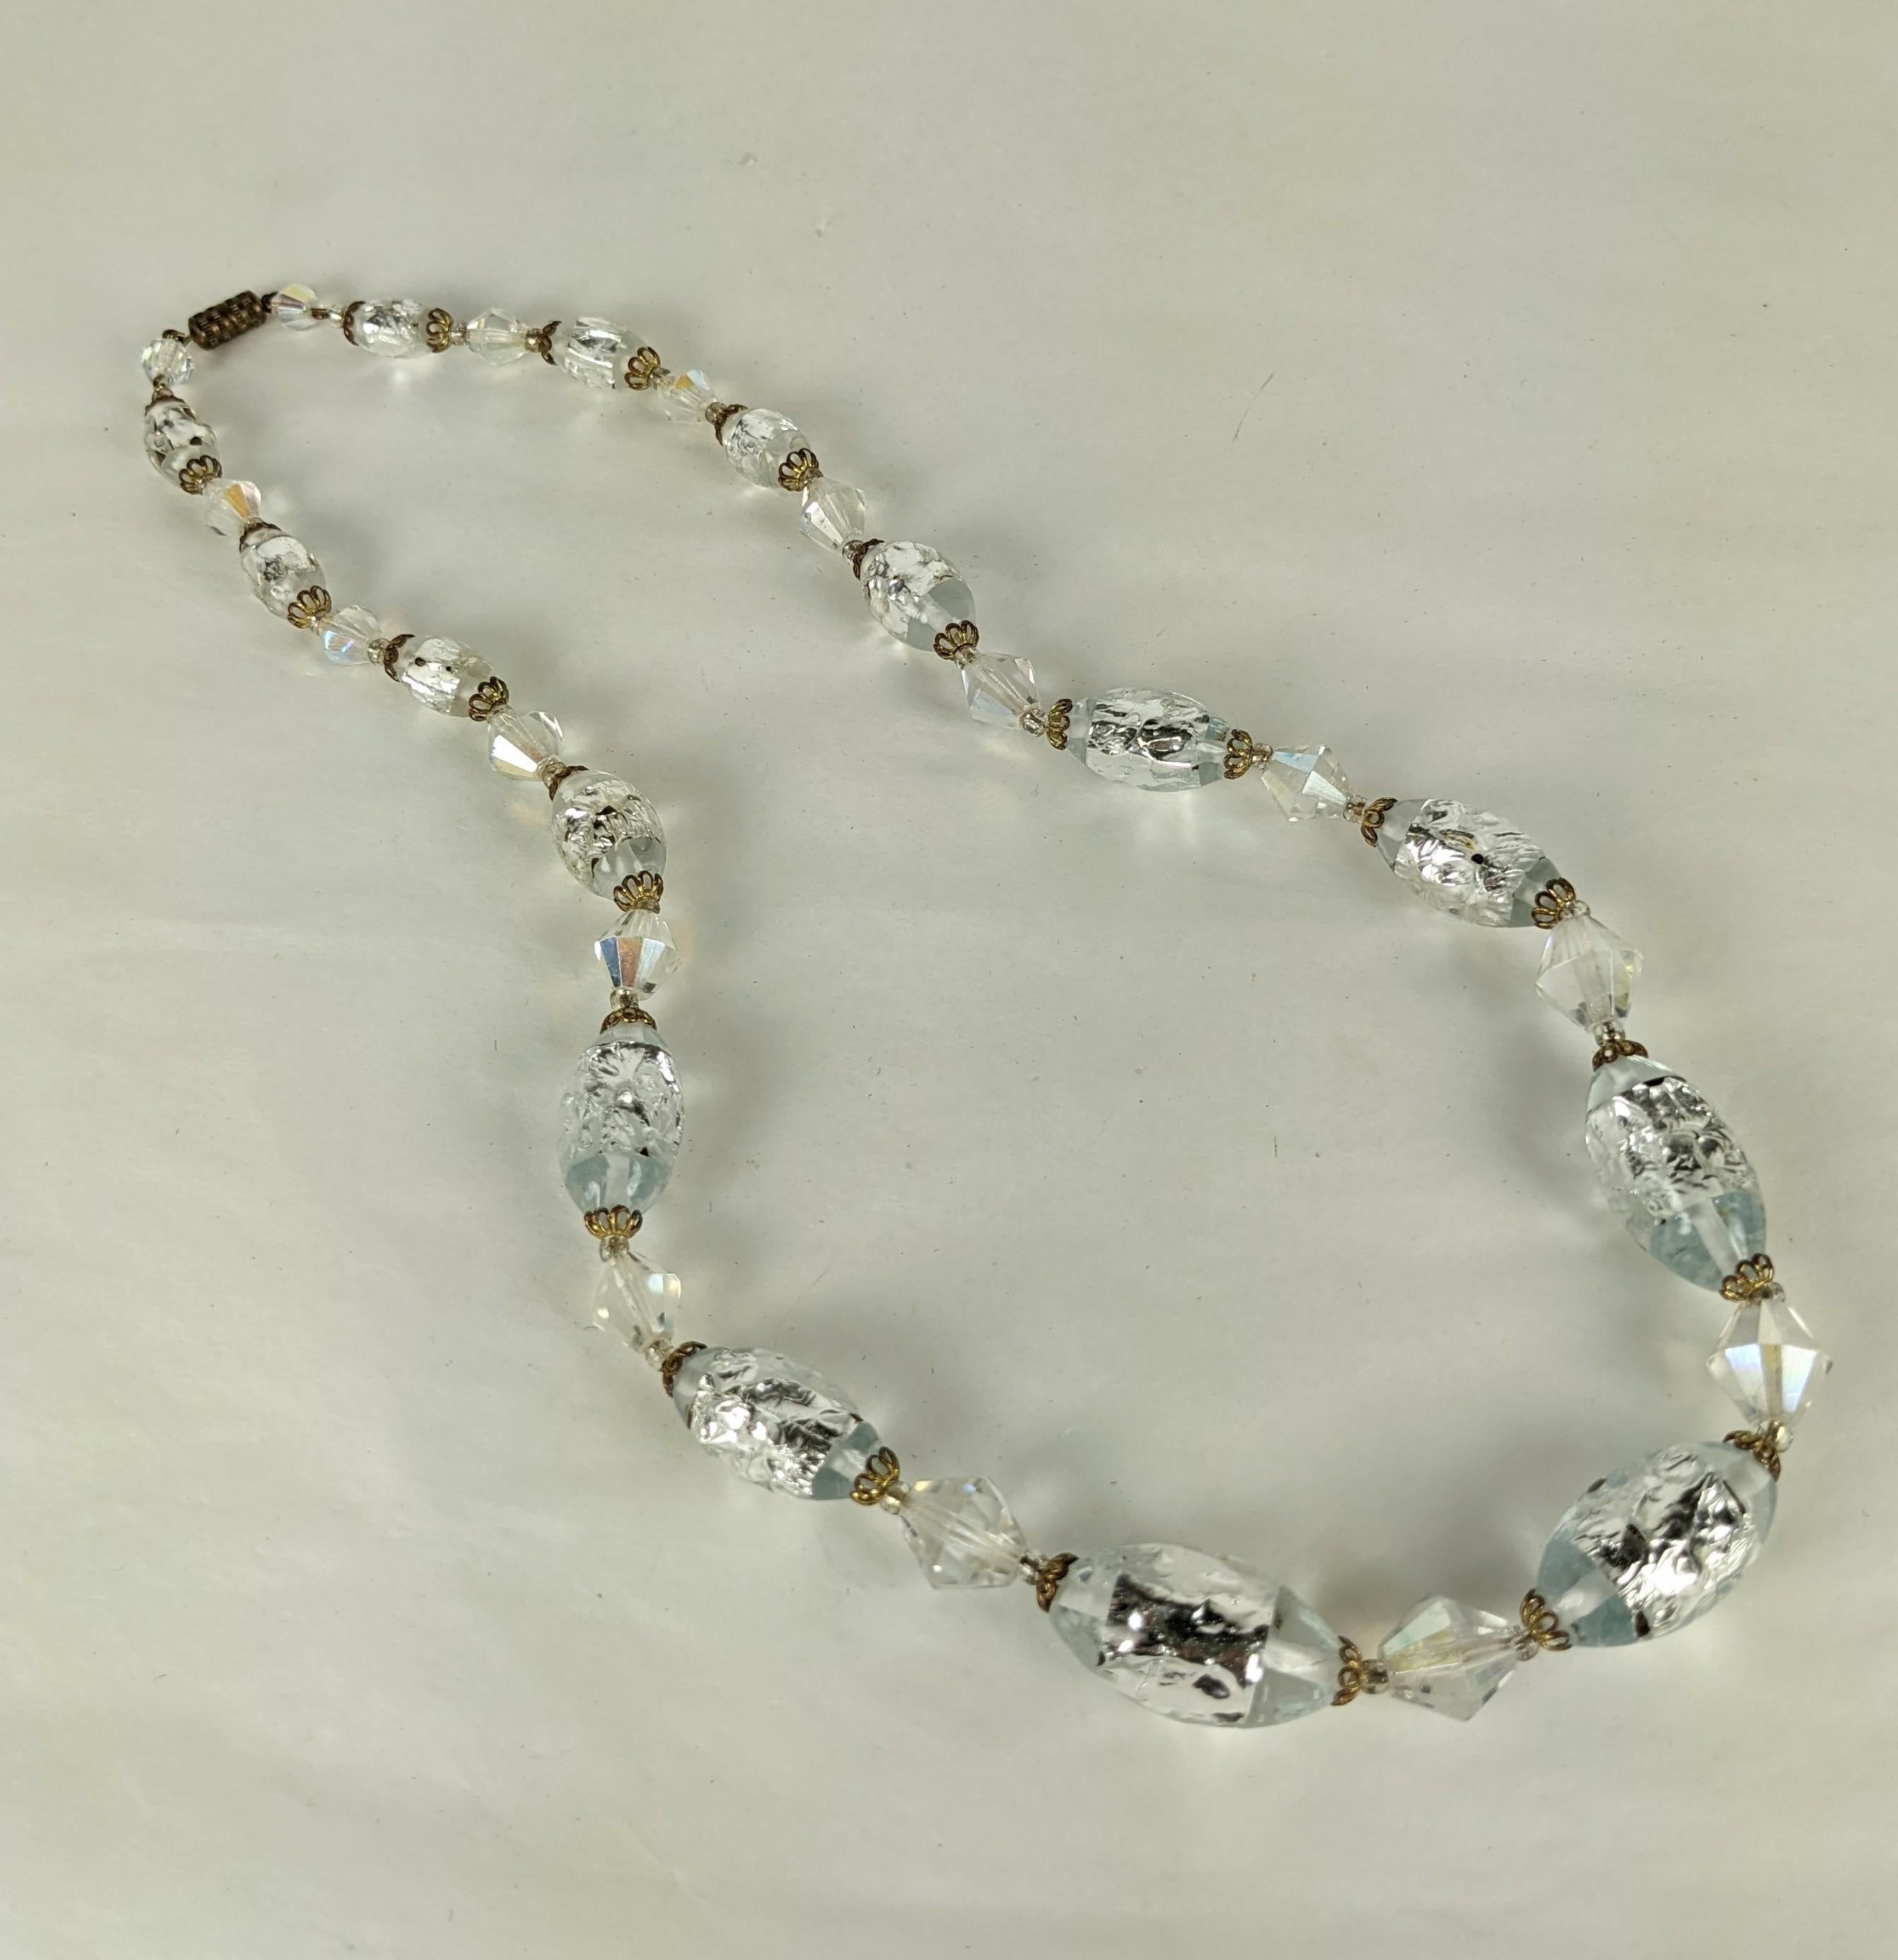 Wunderschöne venezianische Murano-Glasperlen aus den 1950er Jahren. In die Glasperlen werden bei der Herstellung Metallfolienstreifen eingelegt, die dann mit filigranen Kappen und facettierten Perlen in Aurora-Kristall versetzt werden. Größte Perle